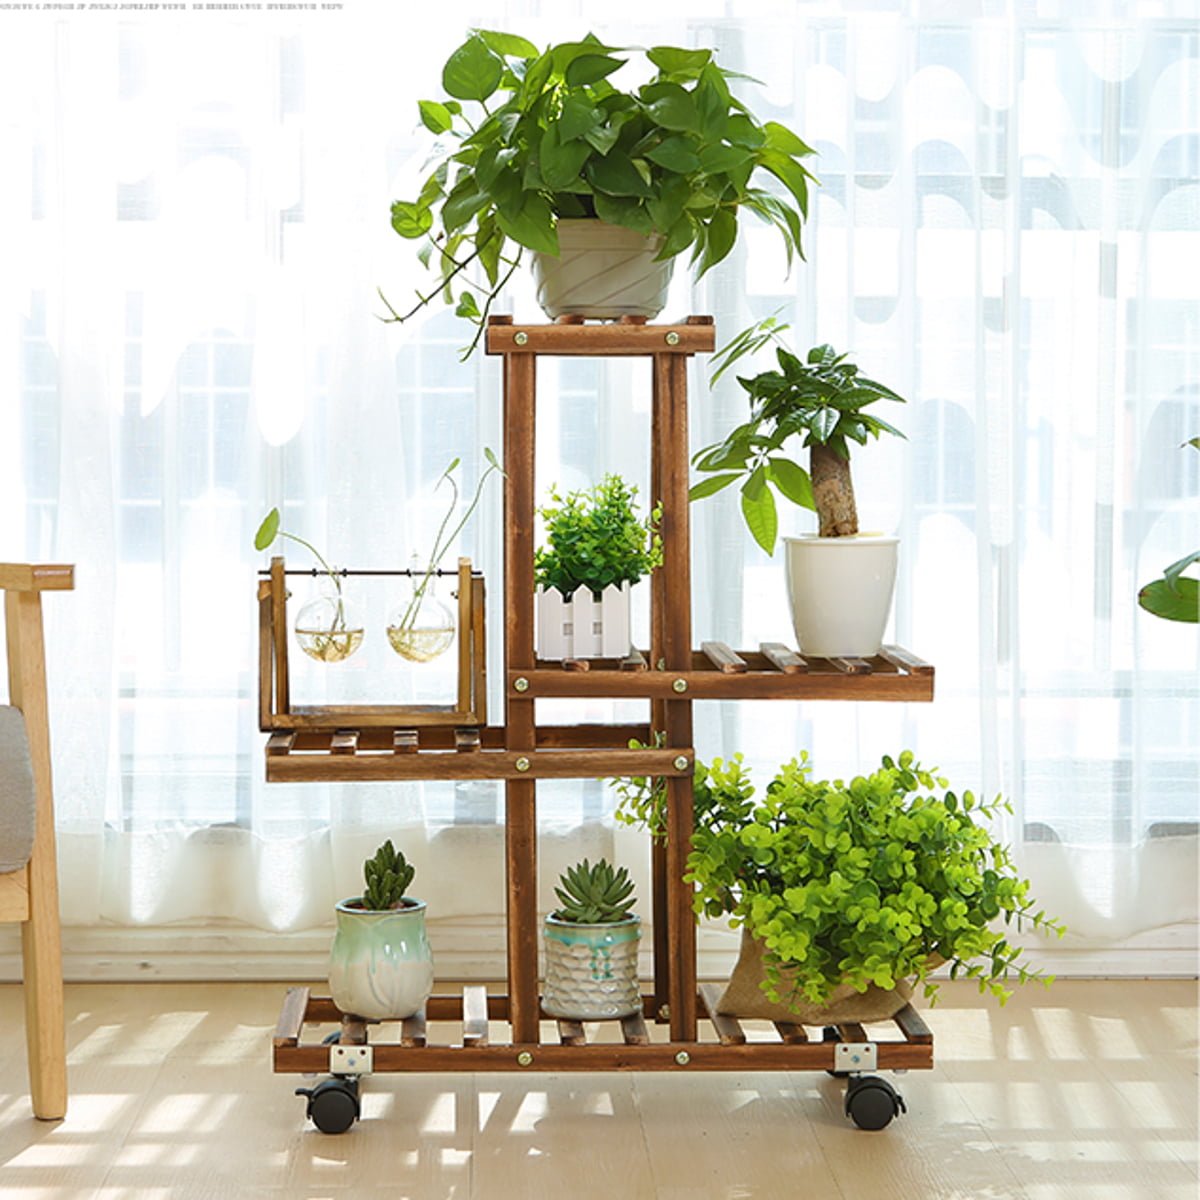 4 Tier Garden Wooden Plant Stand Pot Holder Display Shelf Indoor/Outdoor Wheels